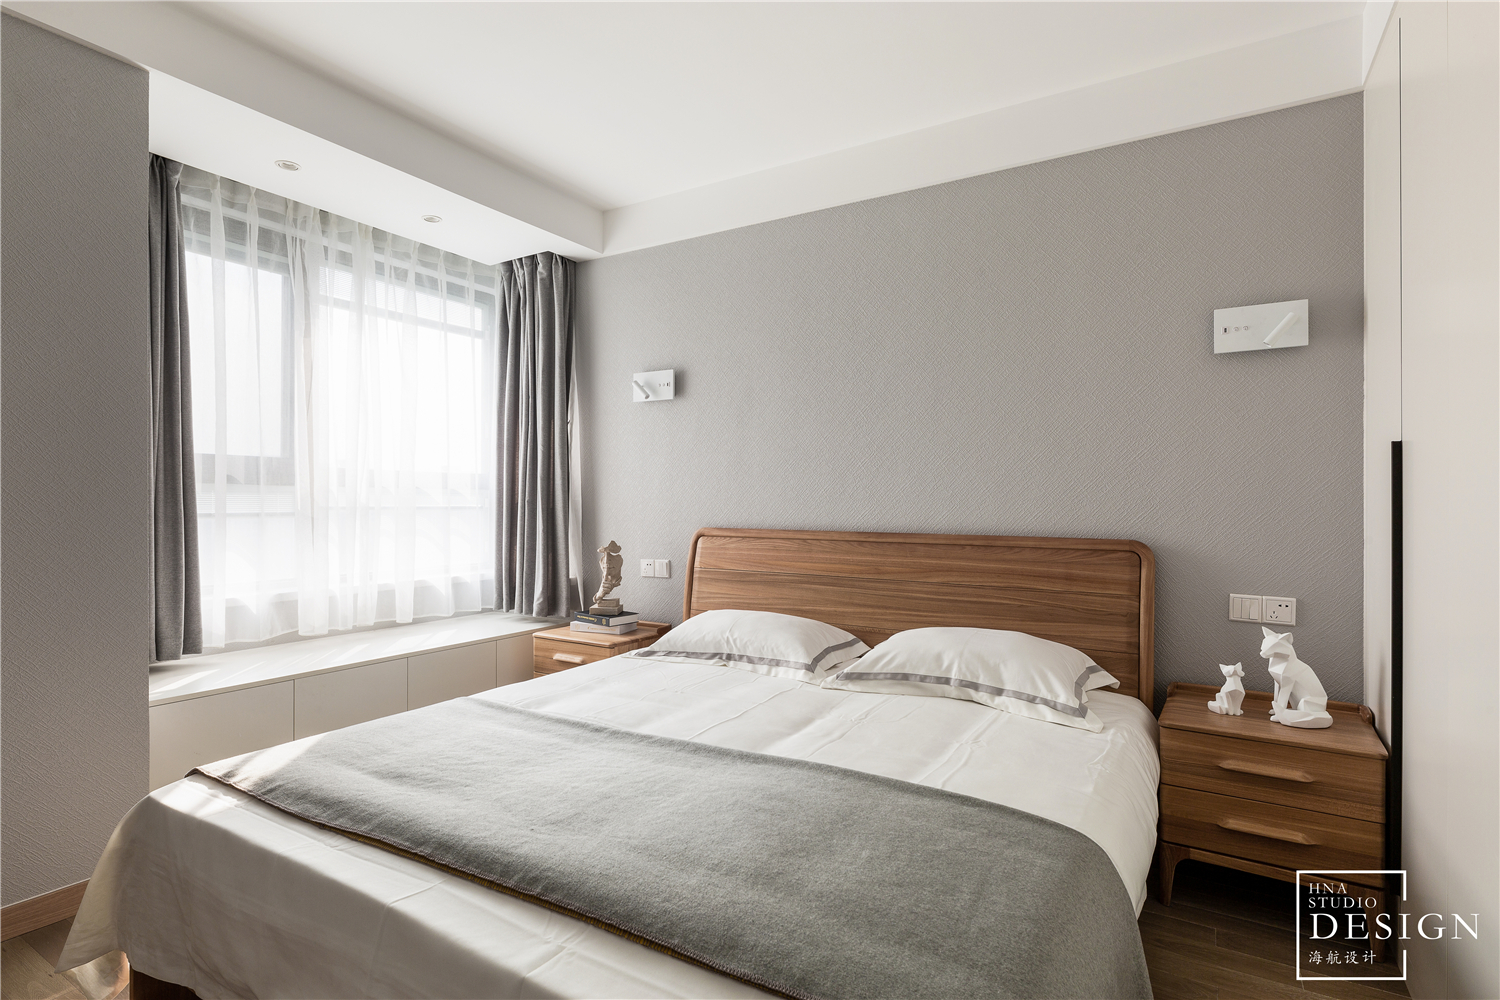 卧室床1装修效果图简单北欧风卧室设计图北欧风卧室设计图片赏析